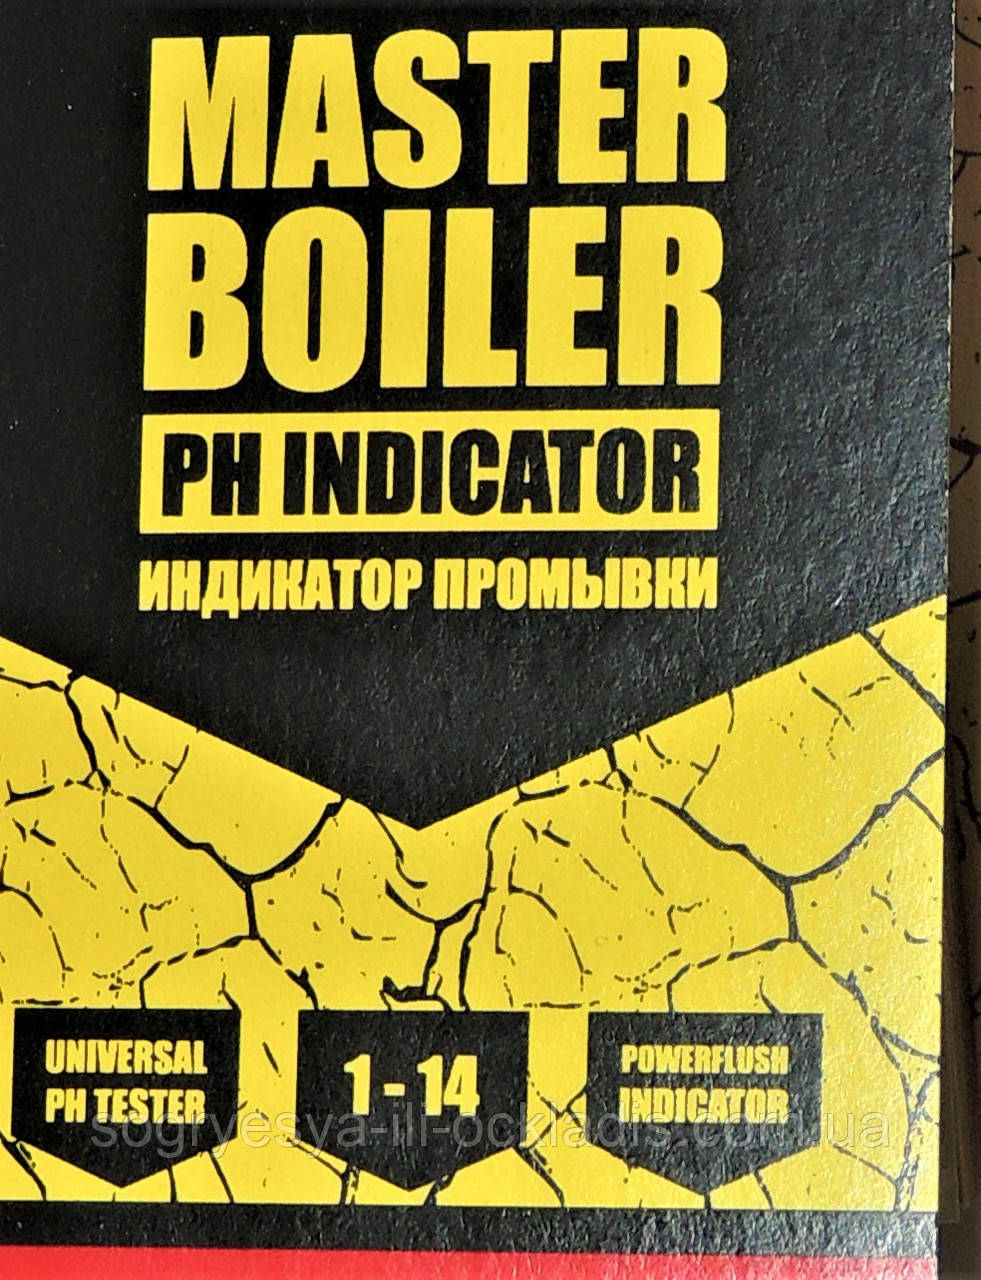 Індикатор промивання РН 1-14 MASTER BOILER (ф.у, Україна) контролю рівня кислотності, арт. MBI, к.з. 0423